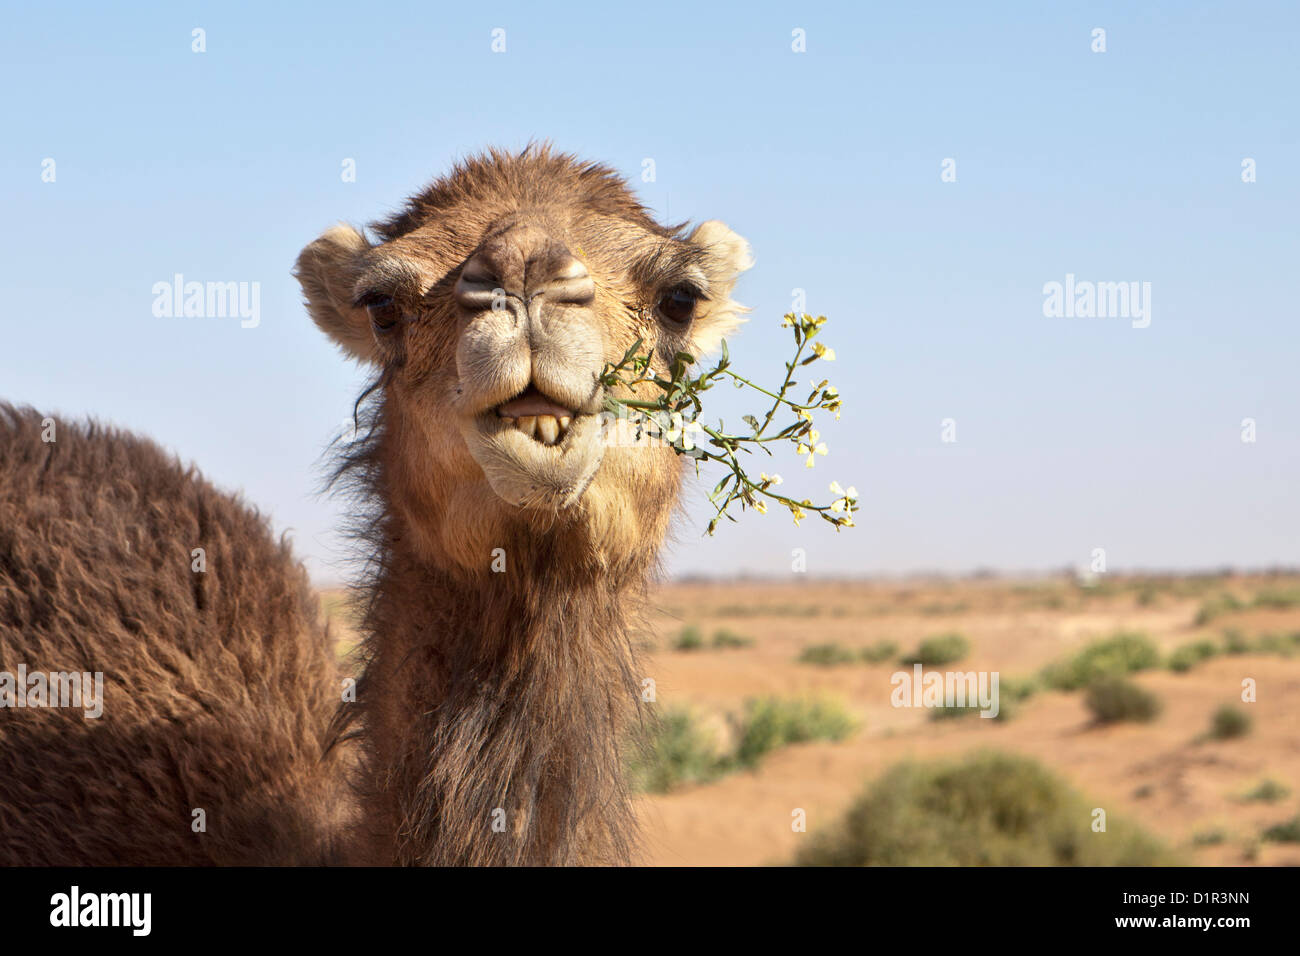 Marruecos, M'Hamid, Erg Chigaga. El desierto del Sahara. Comer camello floración bush. Foto de stock